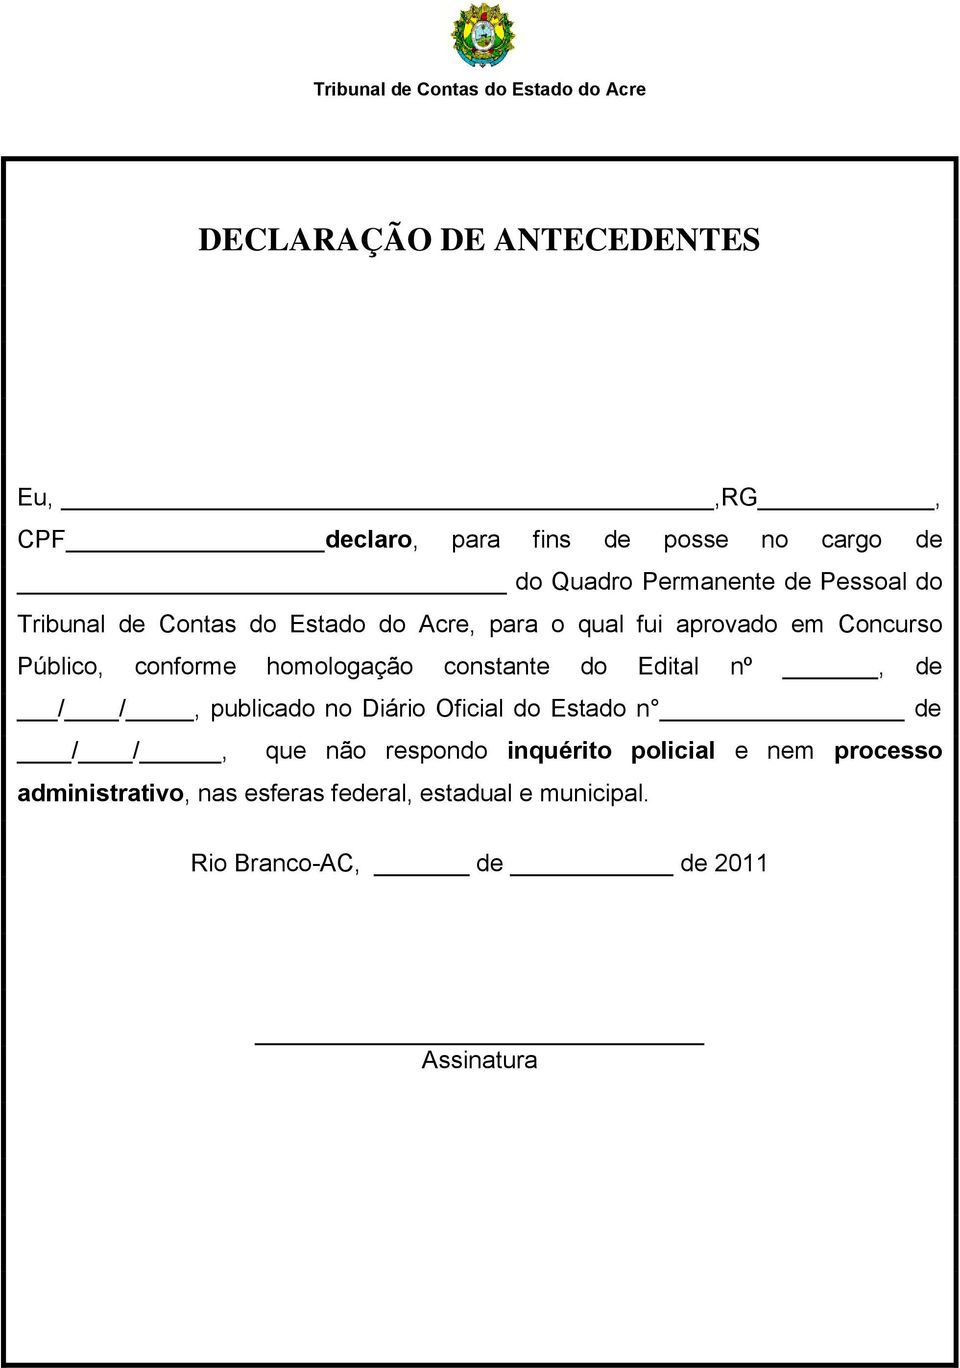 homologação constante do Edital nº, de / /, publicado no Diário Oficial do Estado n de / /, que não respondo